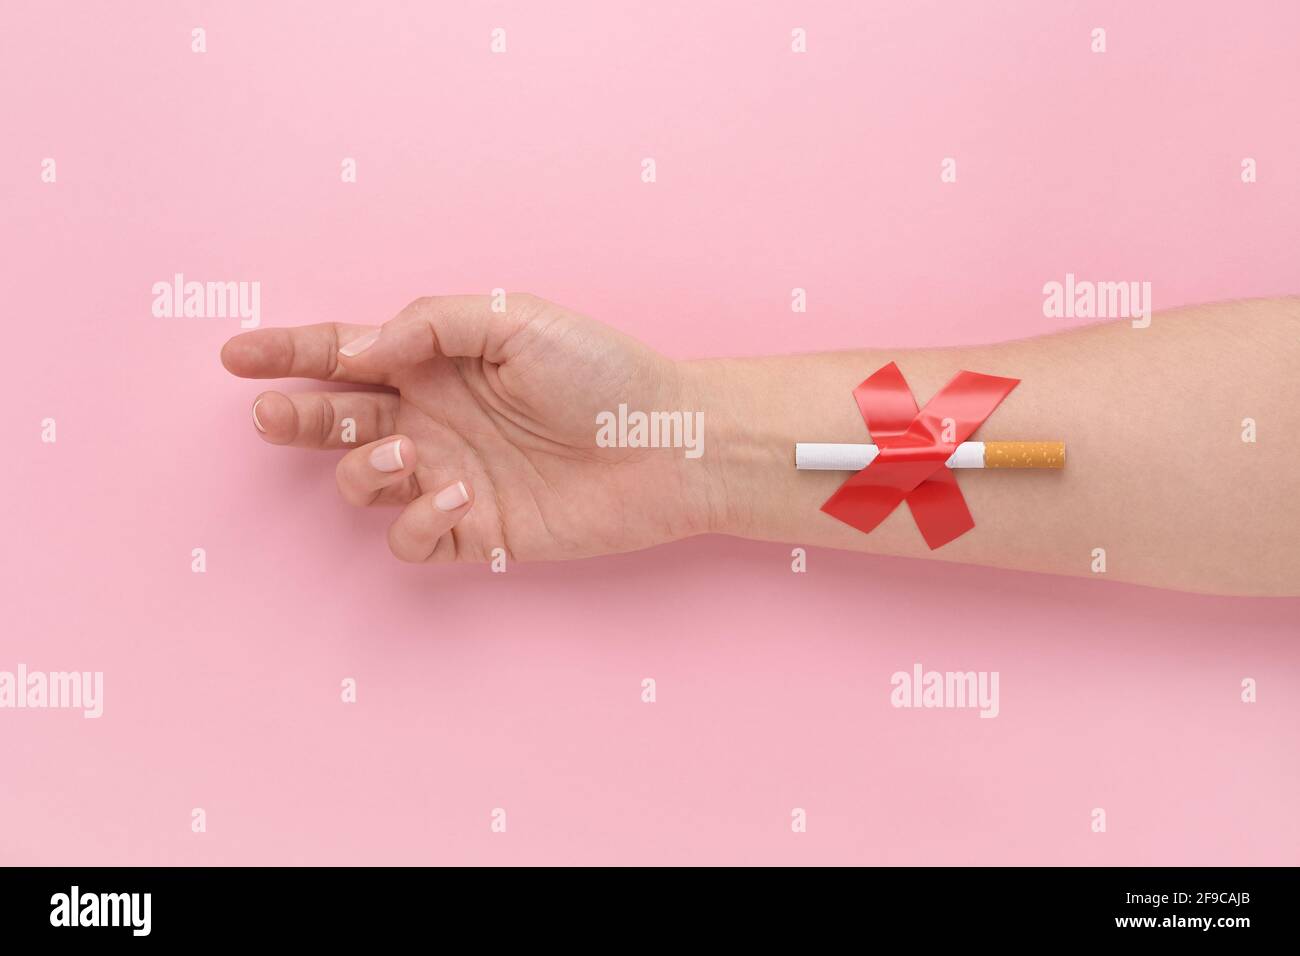 Una sigaretta incollata con una croce alla mano di una donna, smettere di fumare concetto. Foto Stock